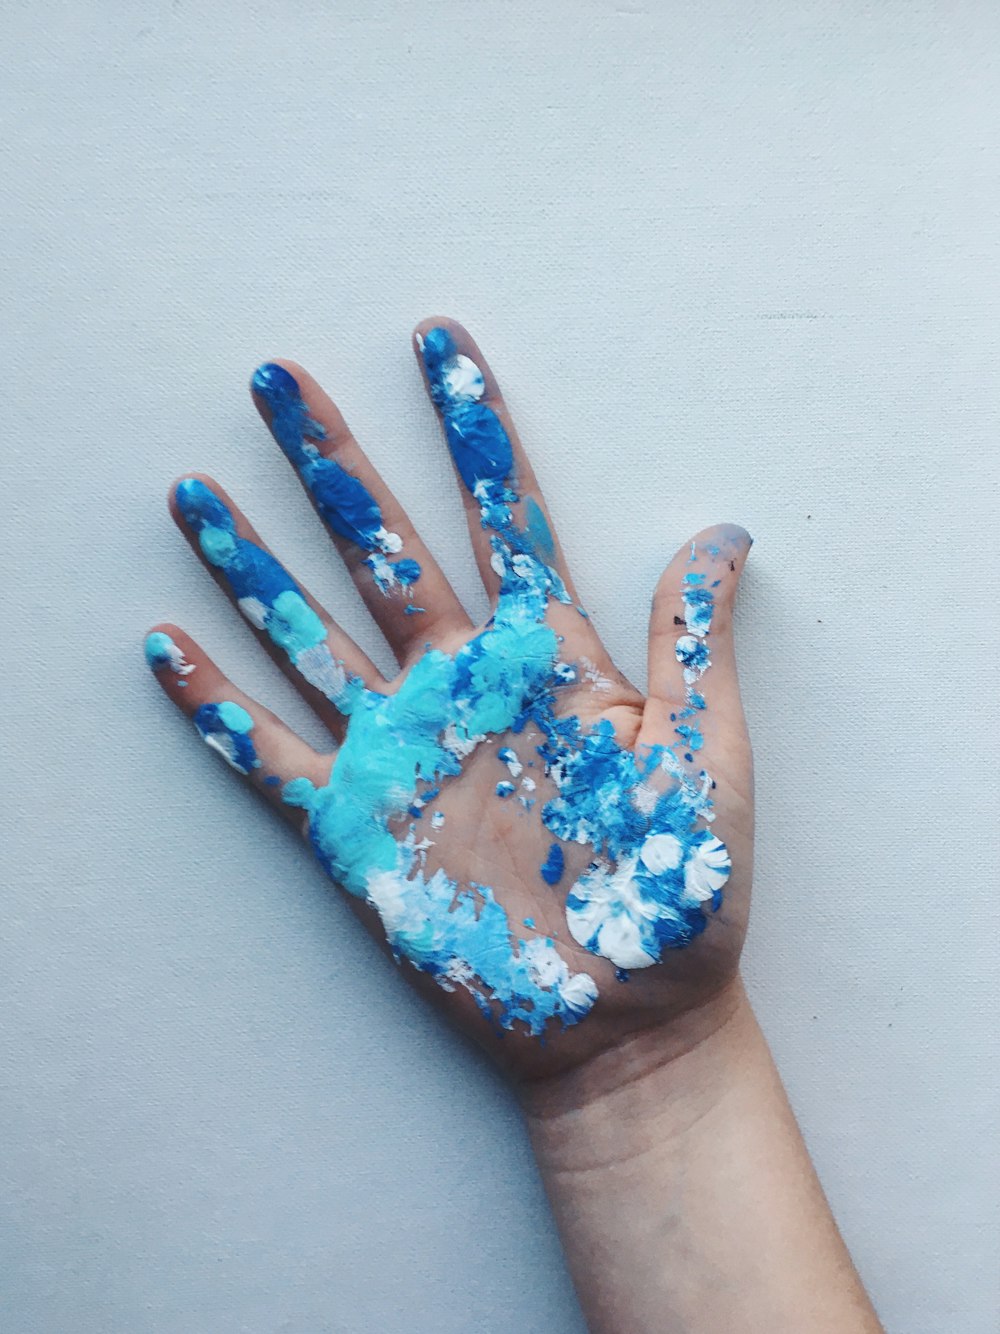 mano humana derecha con pintura azul y blanca